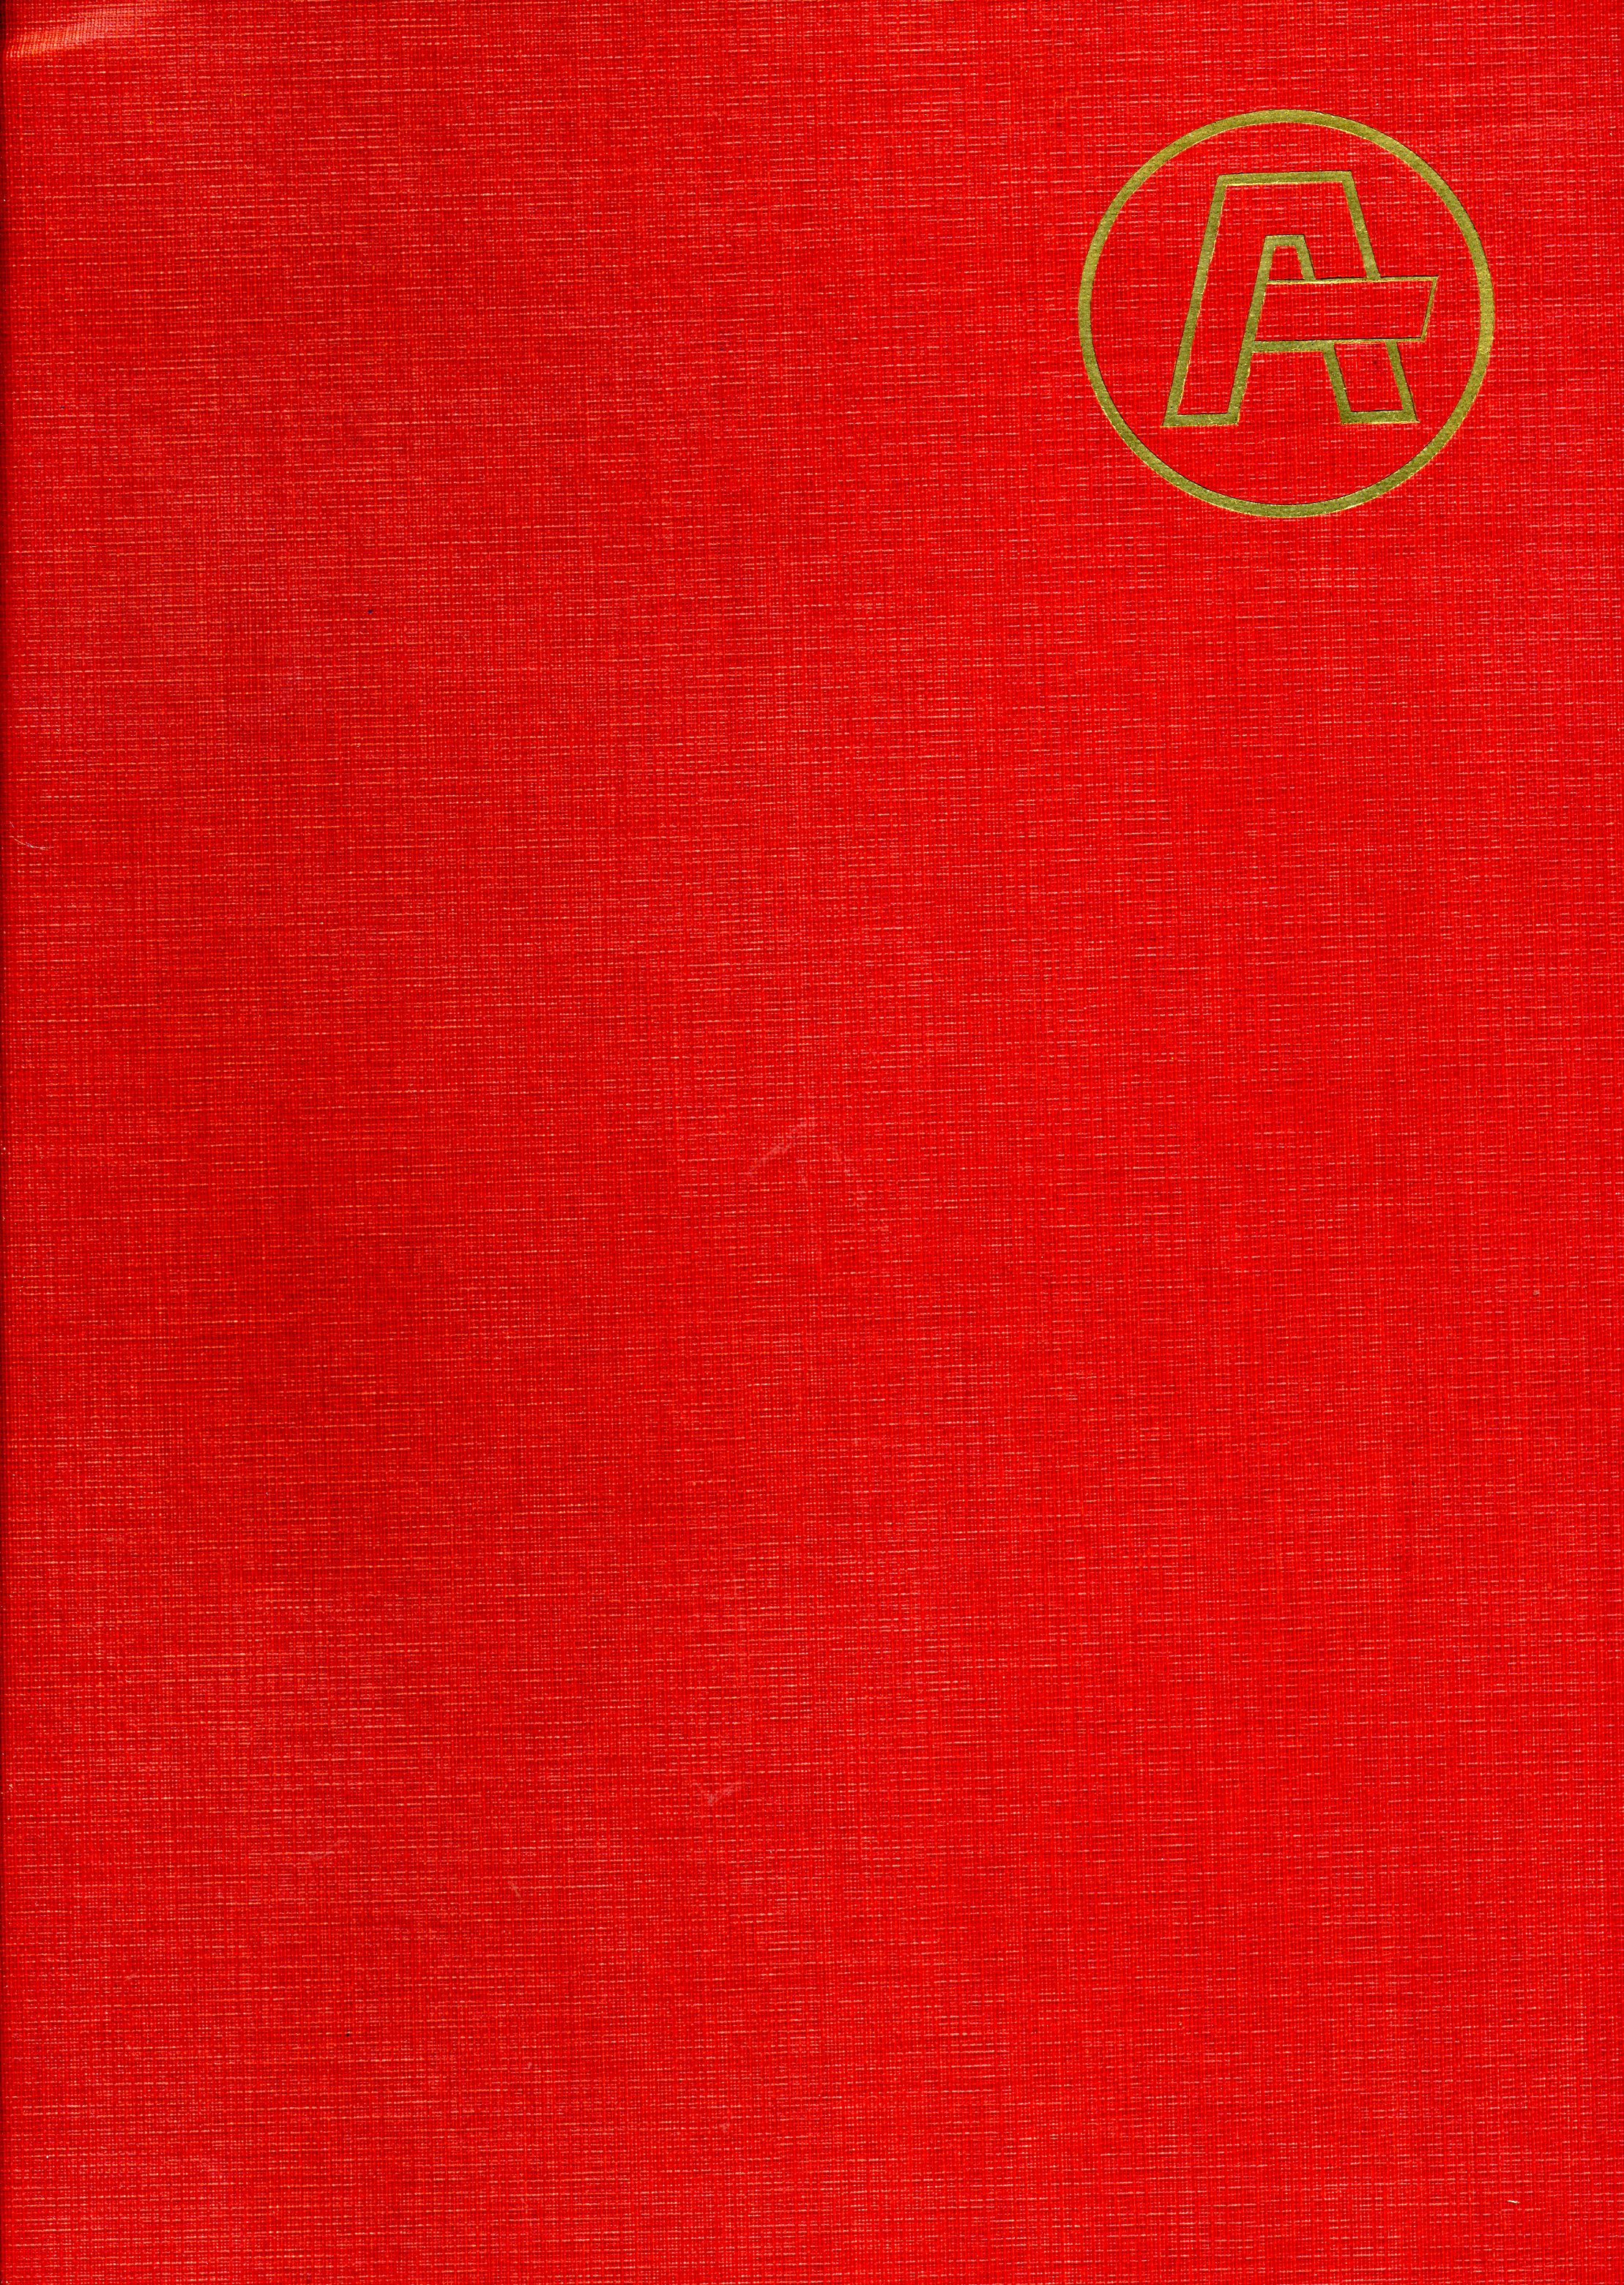 Naučný slovník aktualit 1939